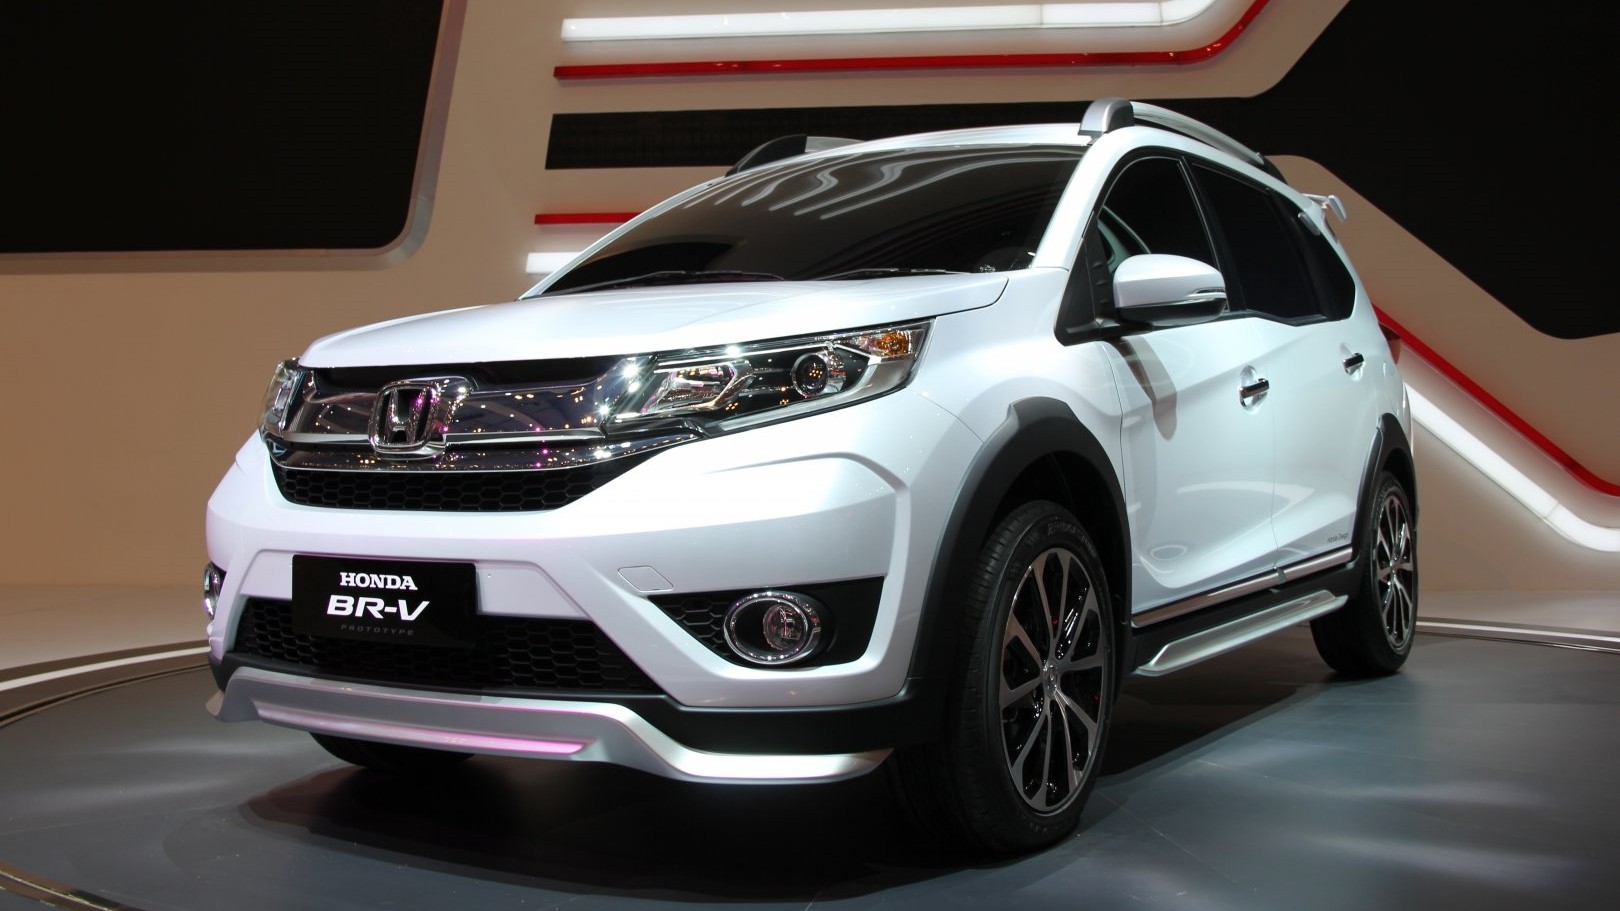 Hình ảnh 2 chi tiết về 4 mẫu xe Honda mới nhất đã và sắp ra mắt người tiêu  dùng Việt  Ảnh tin tức AutoFun